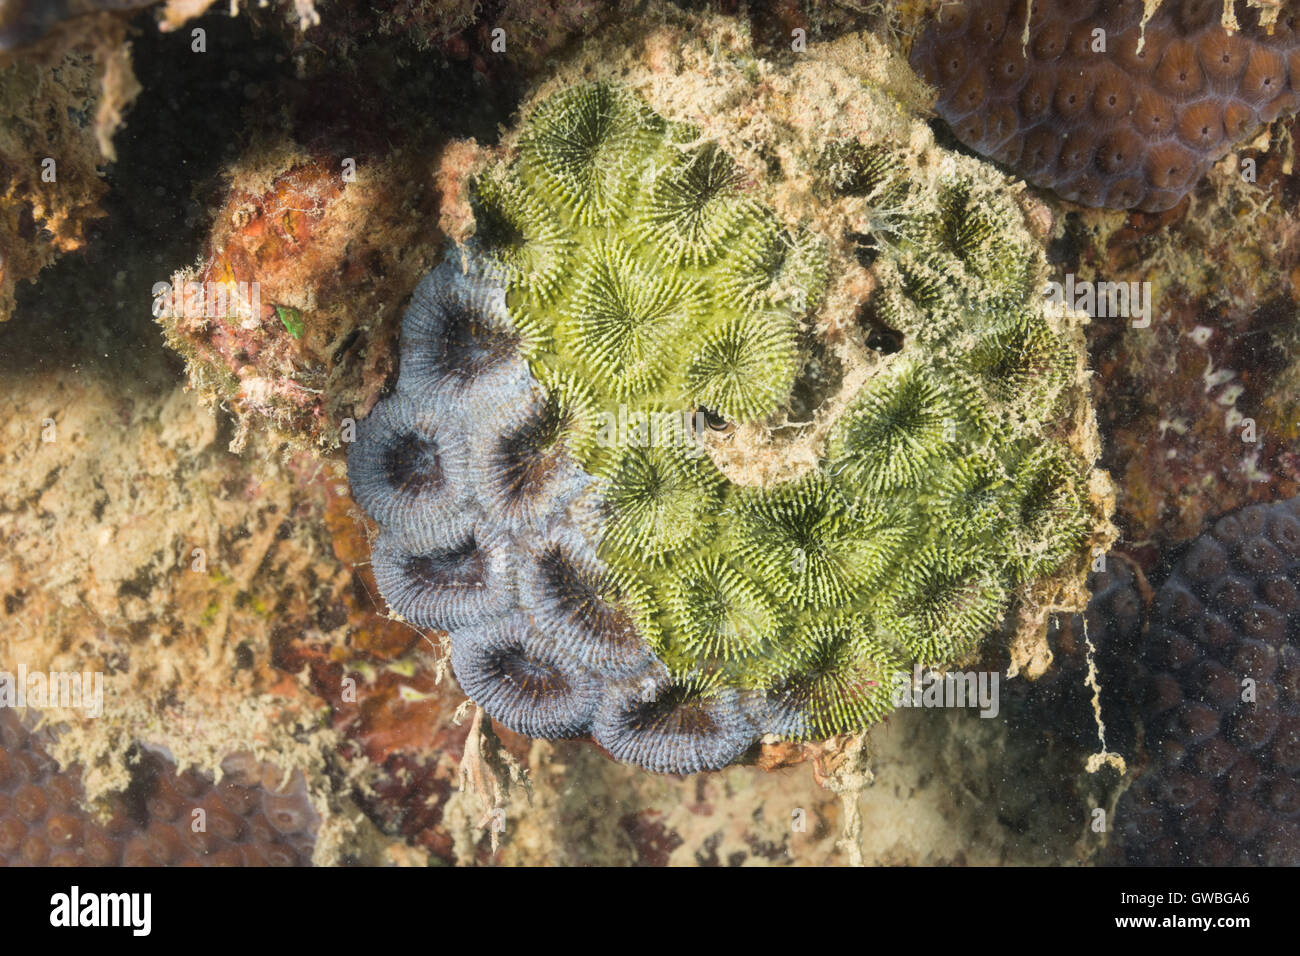 Korallen-Gattung Mussismilia sterben durch Sedimentation. Abrolhos, Bahia, Brasilien Stockfoto